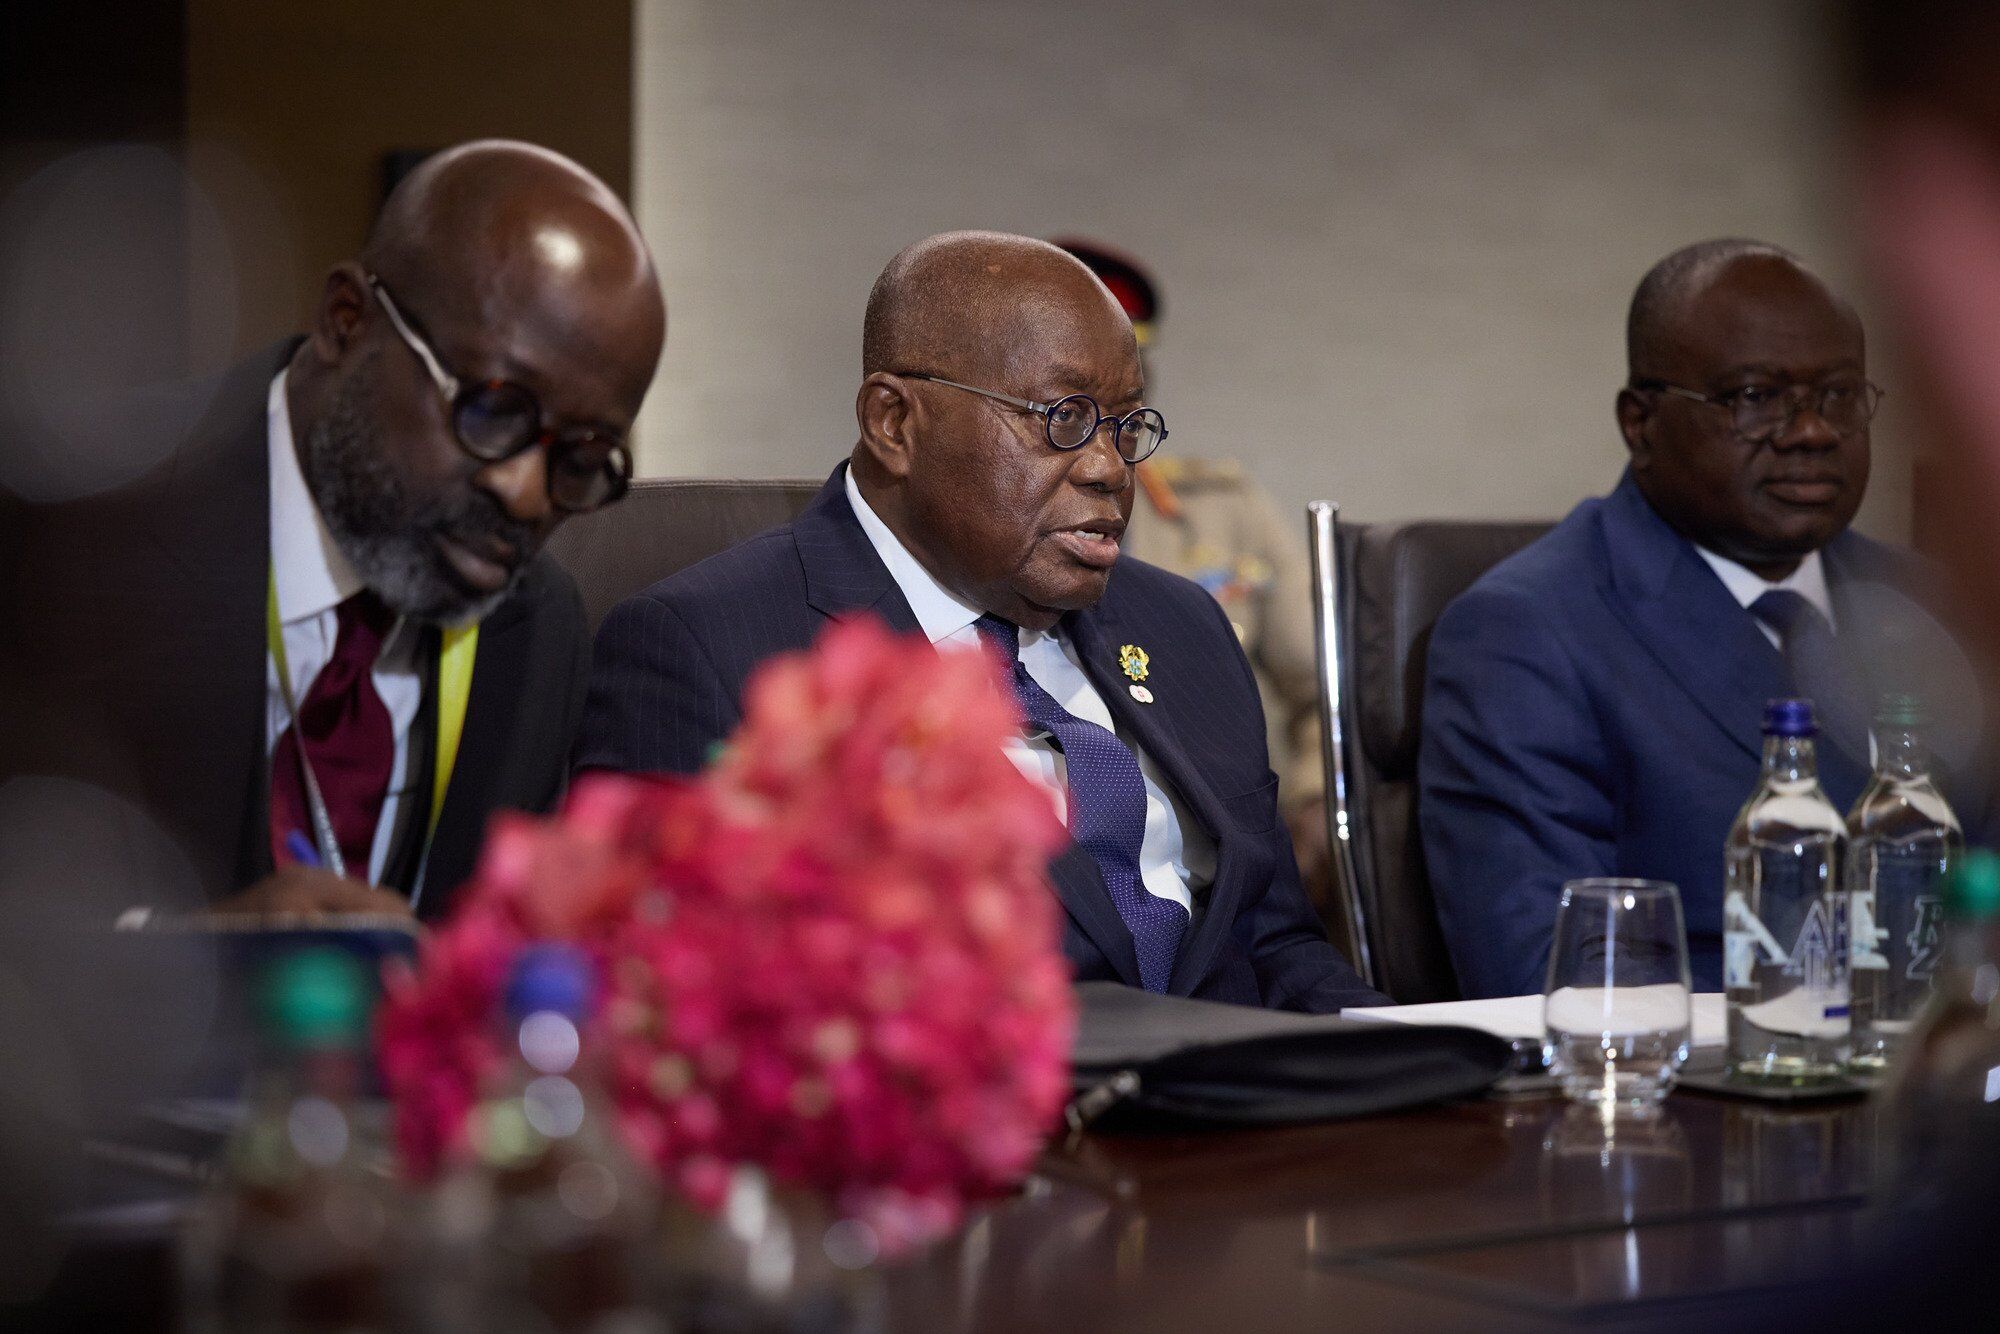 "Голос Африки на Саммите для нас очень важен": Зеленский провел встречу с президентом Ганы. Фото